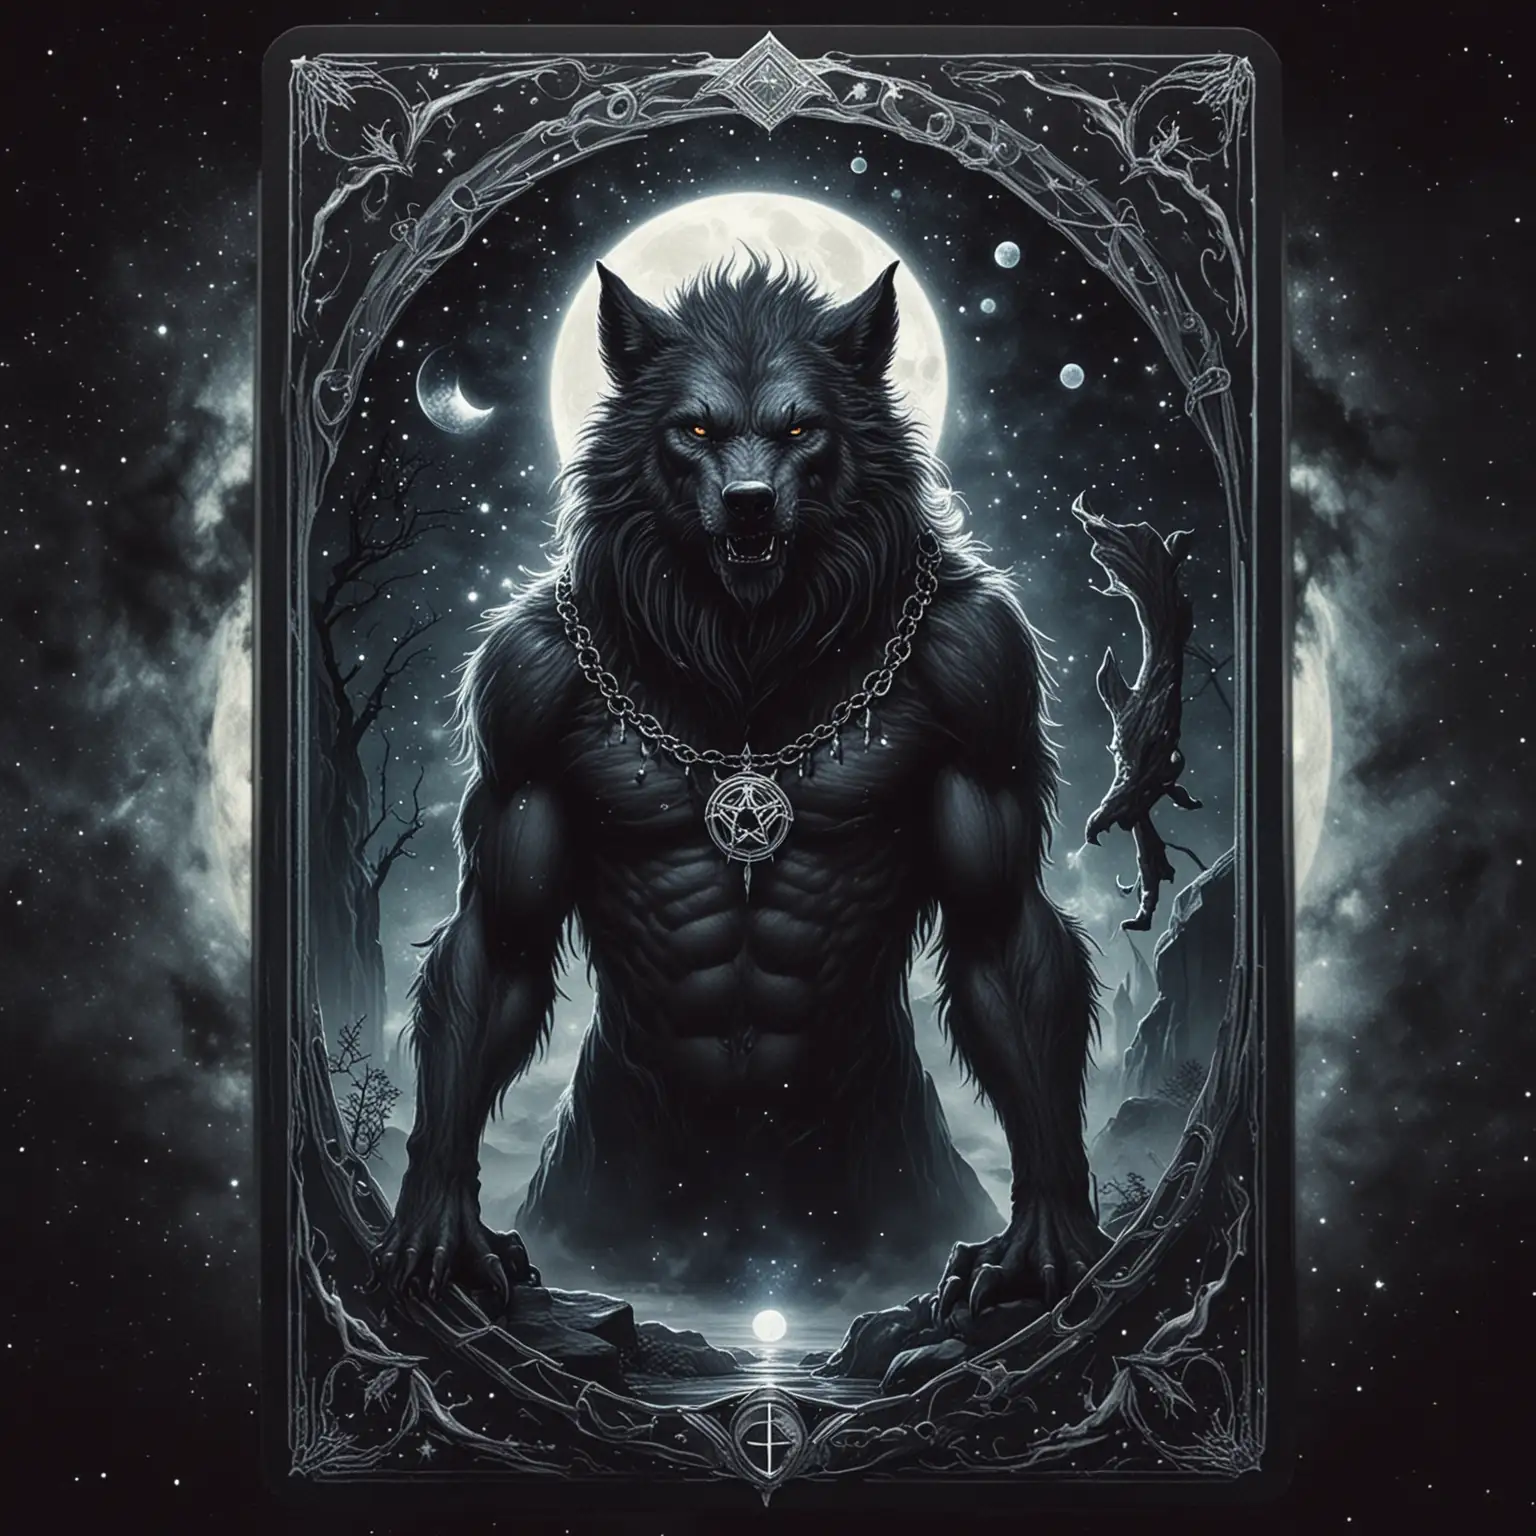 Dark Celestial Tarot Card, Werewolf. 